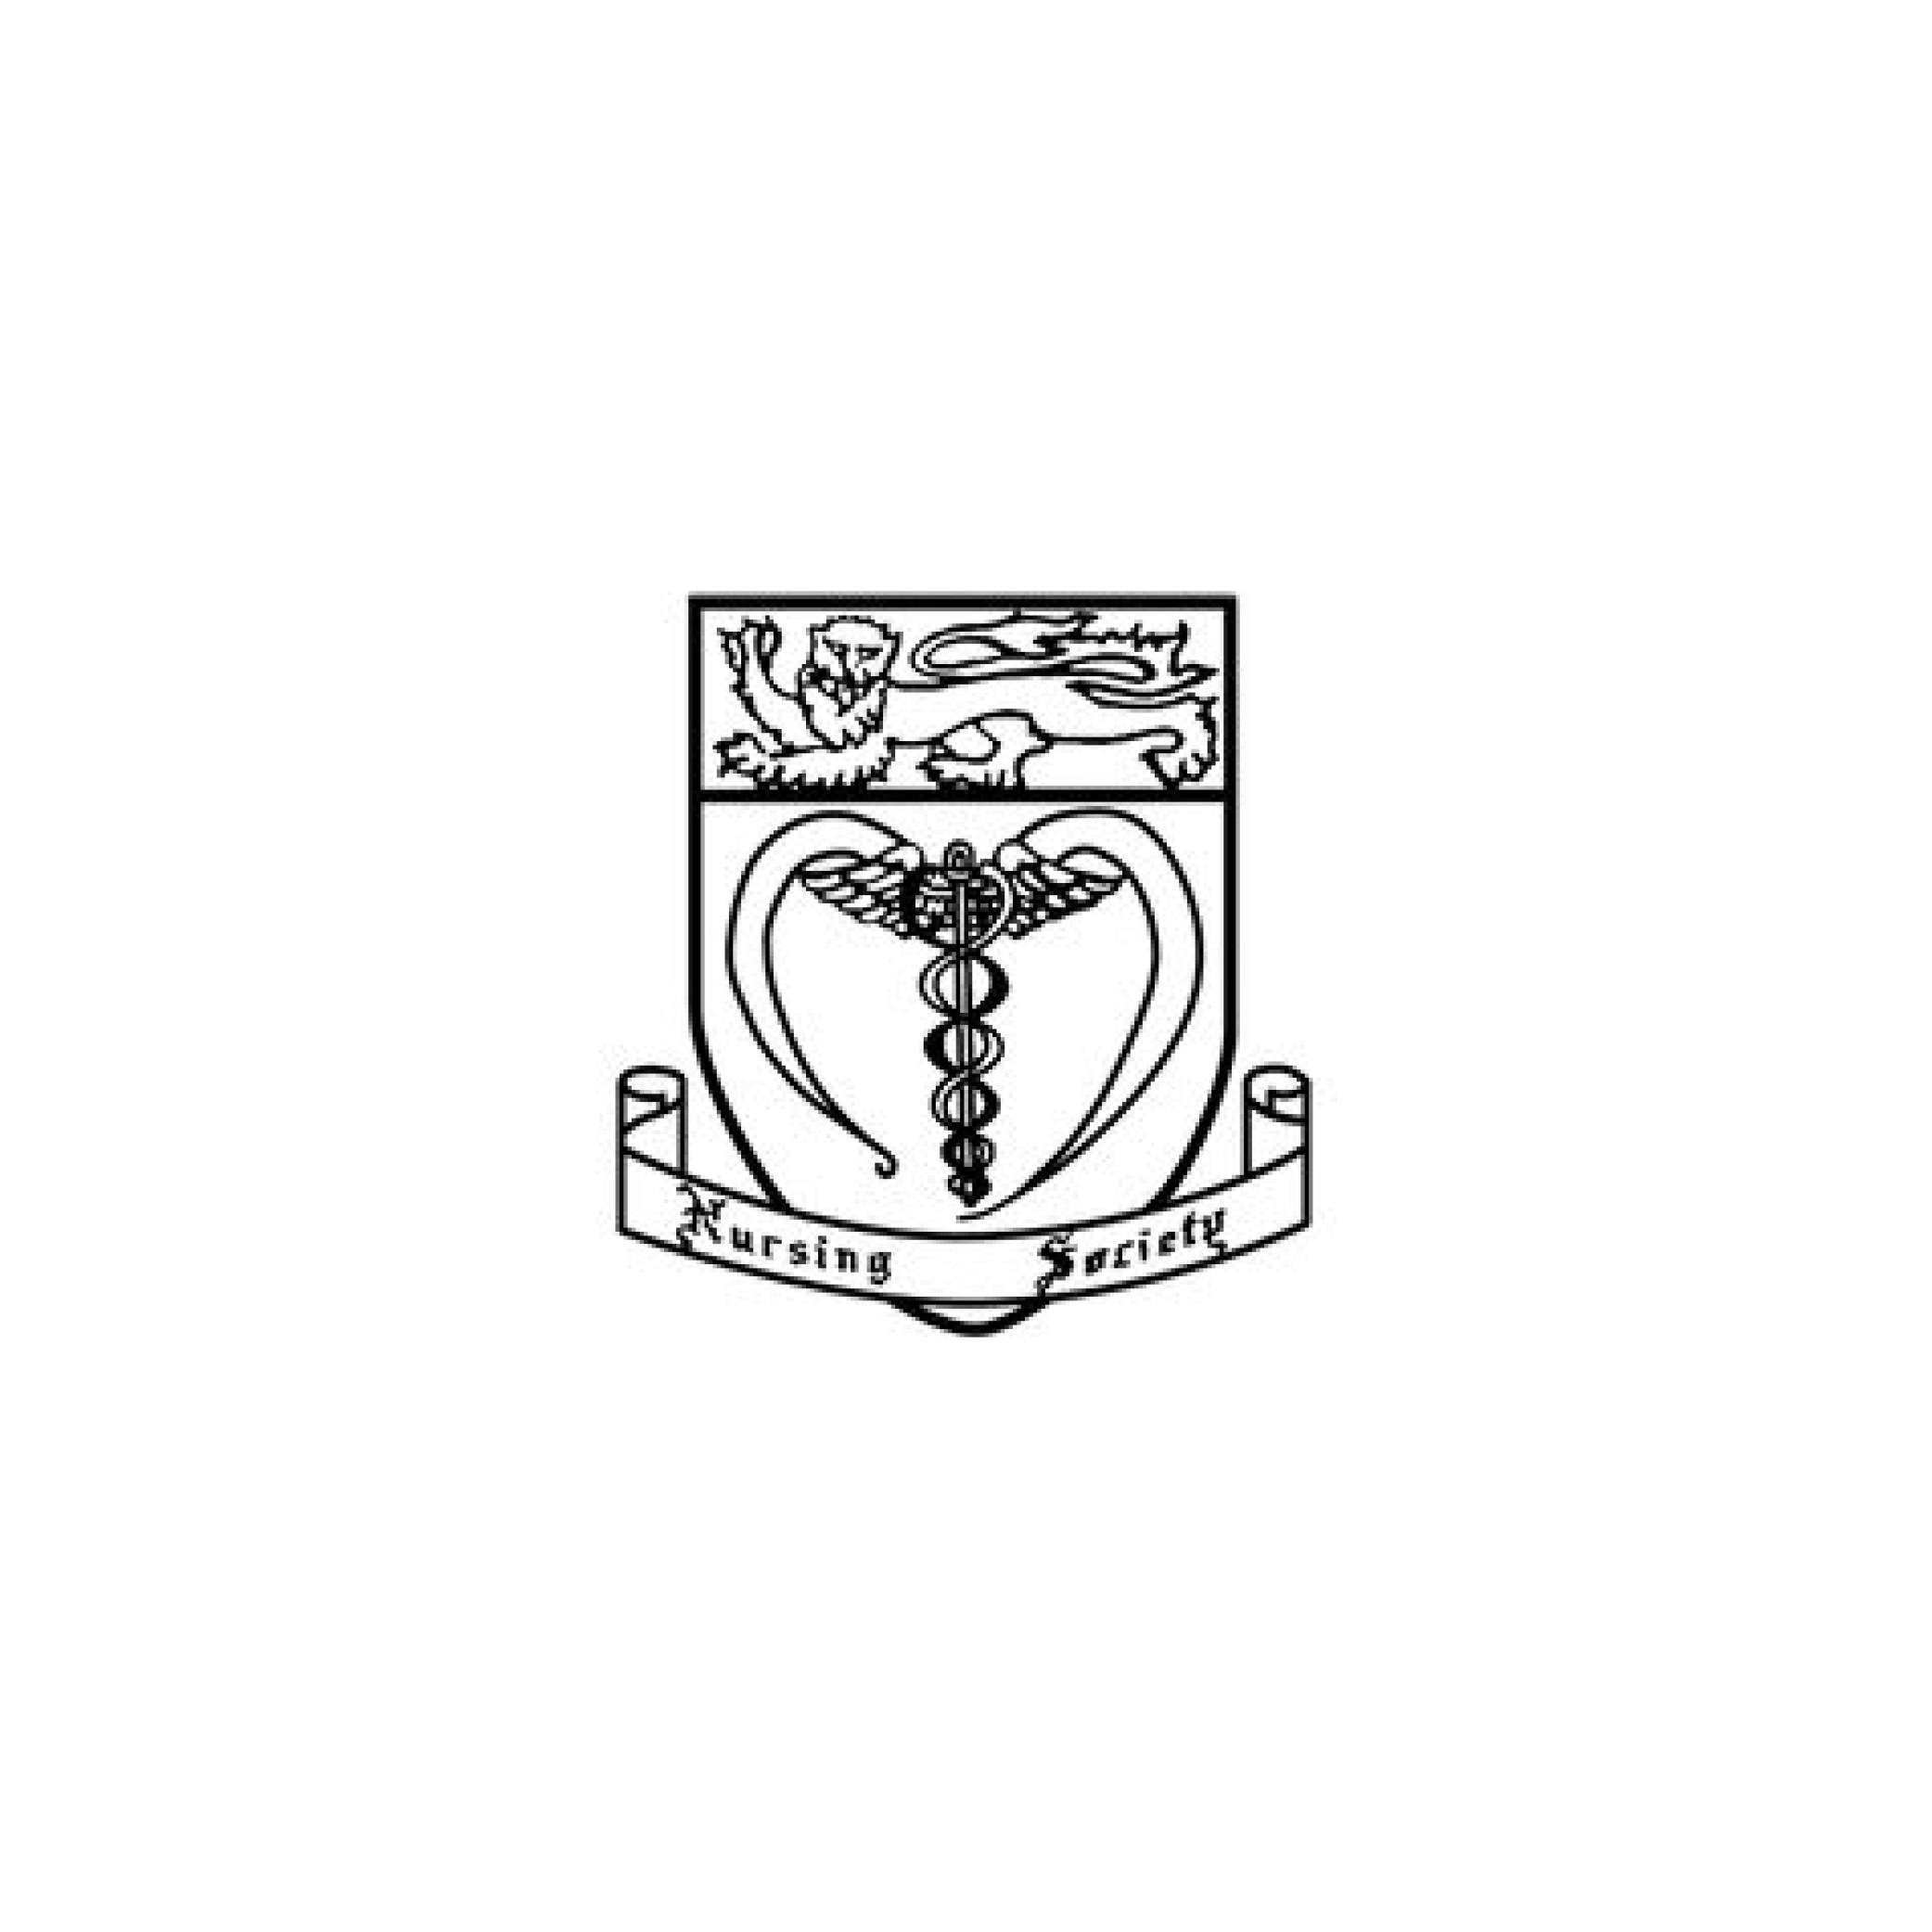 Logo of the Nursing Society